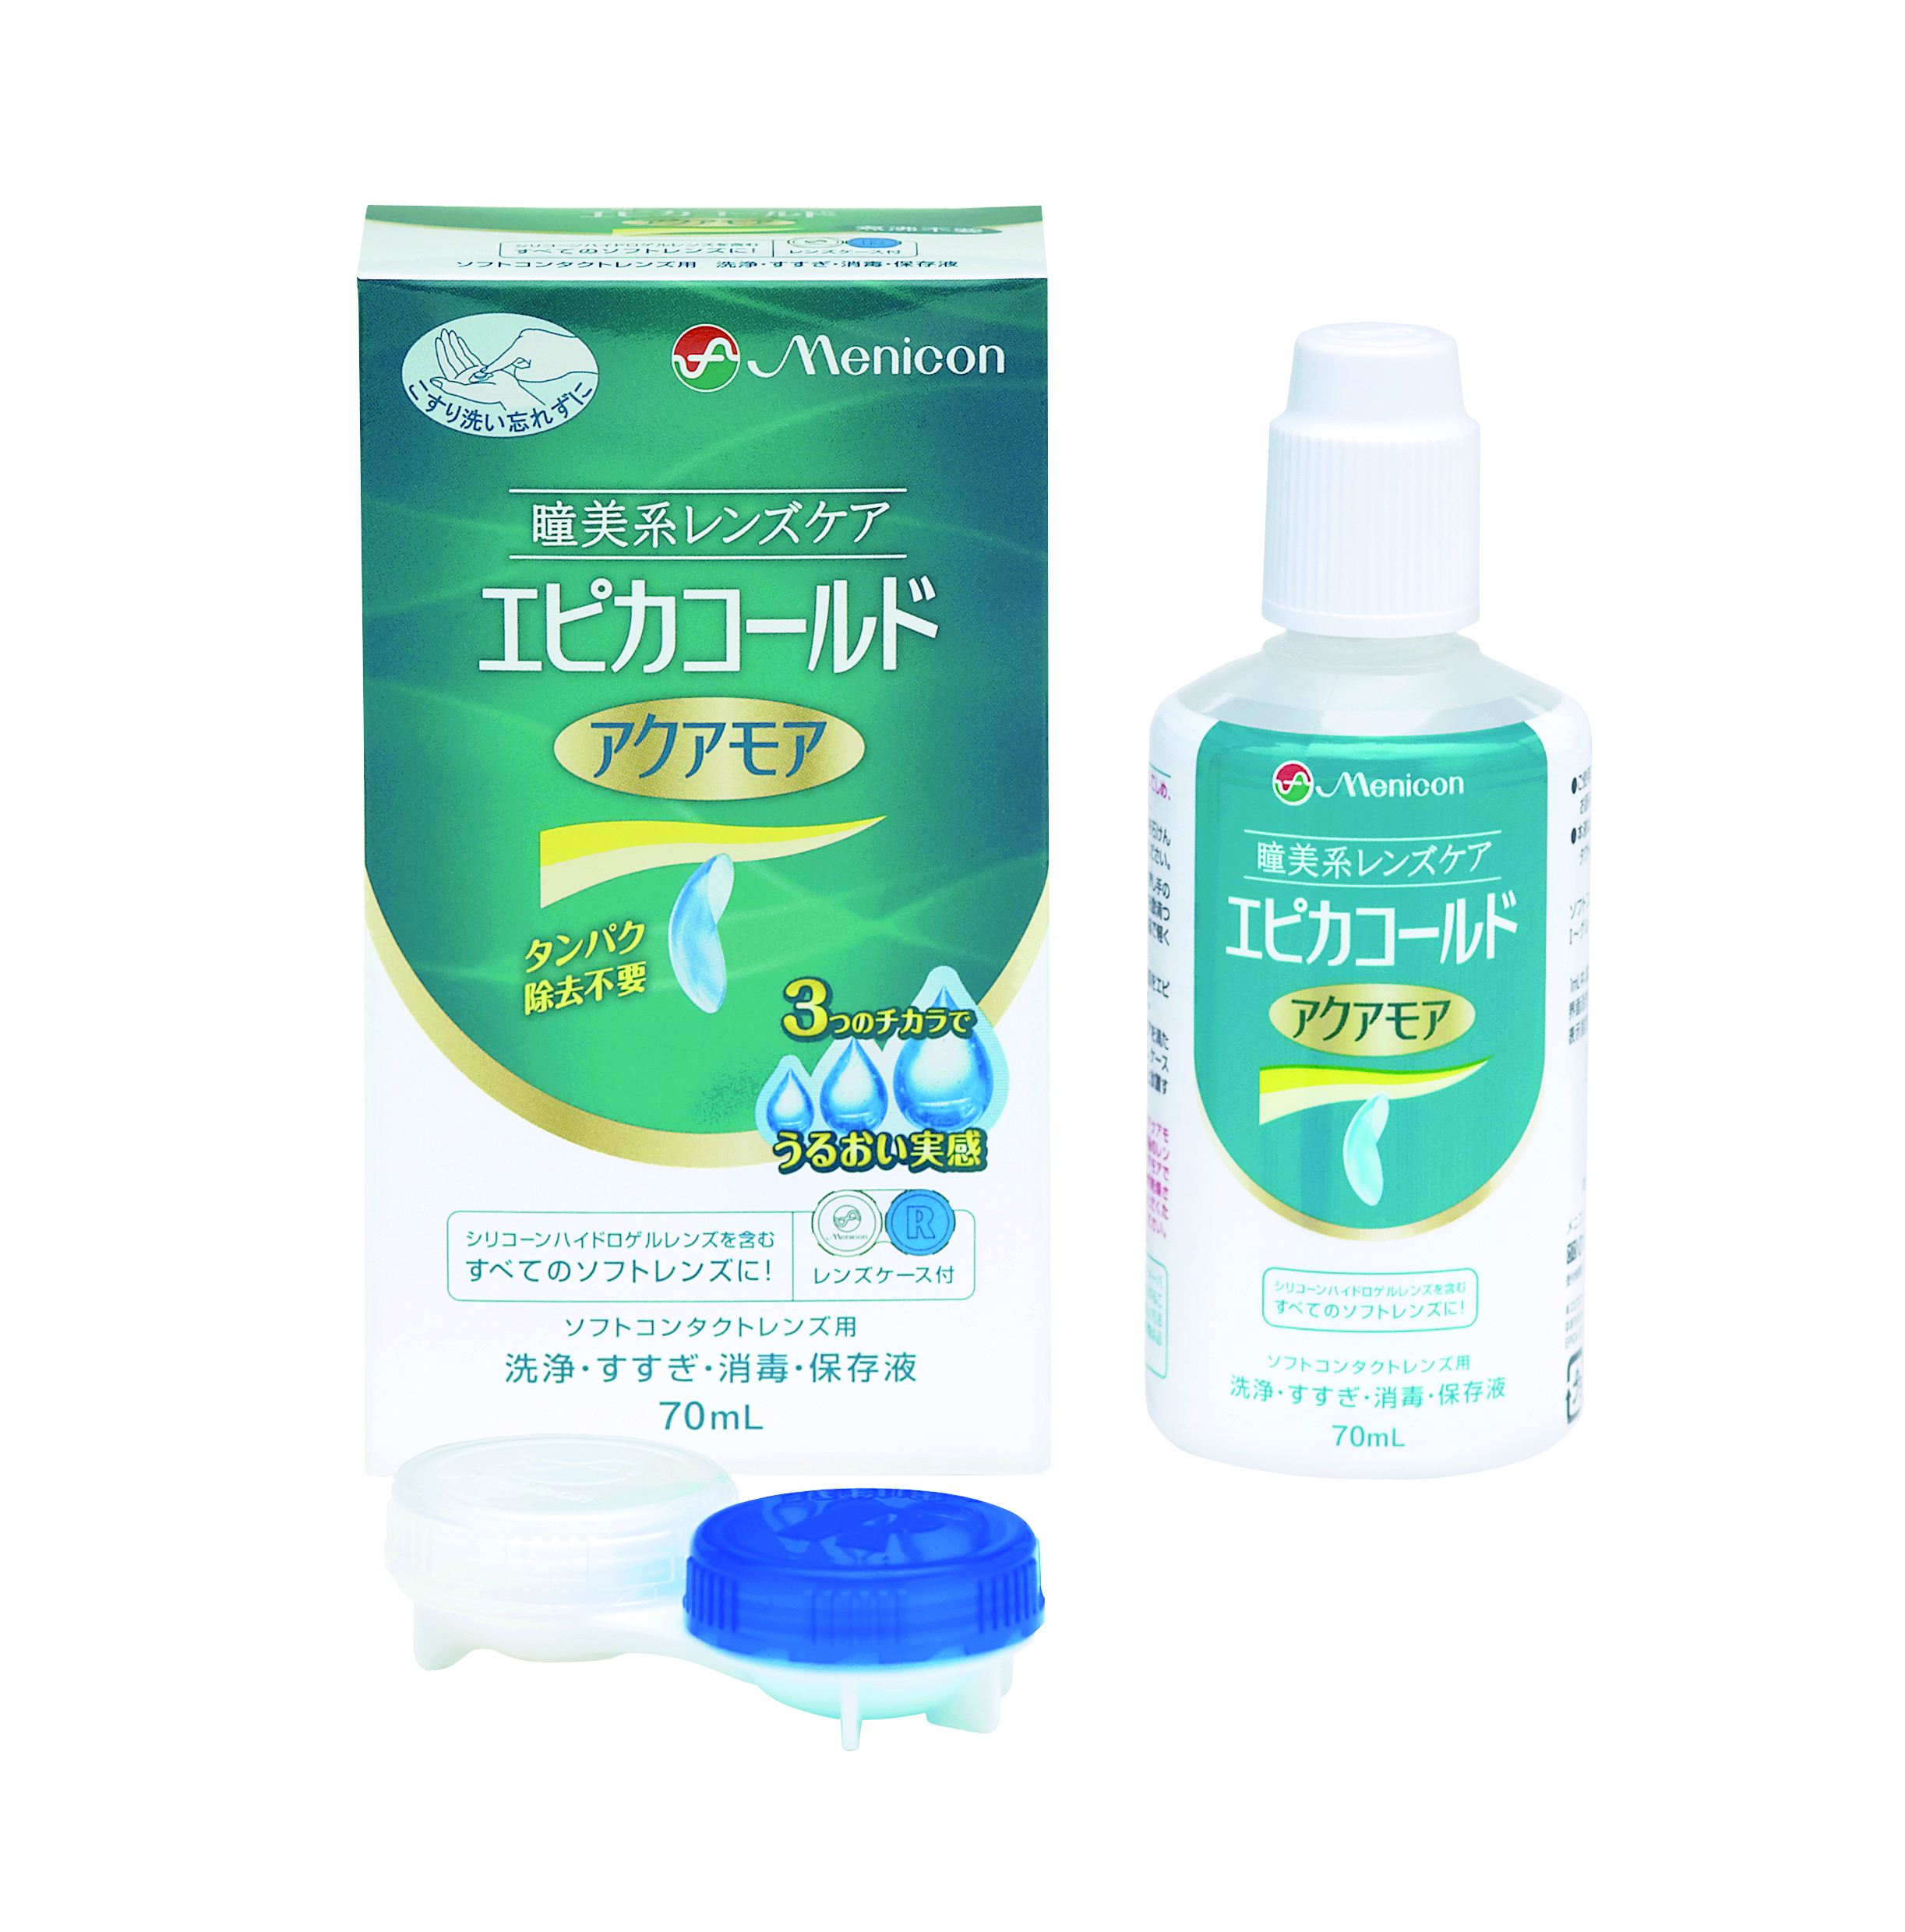 コンタクトレンズ洗浄液 メニコン アクアモア - 基礎化粧品